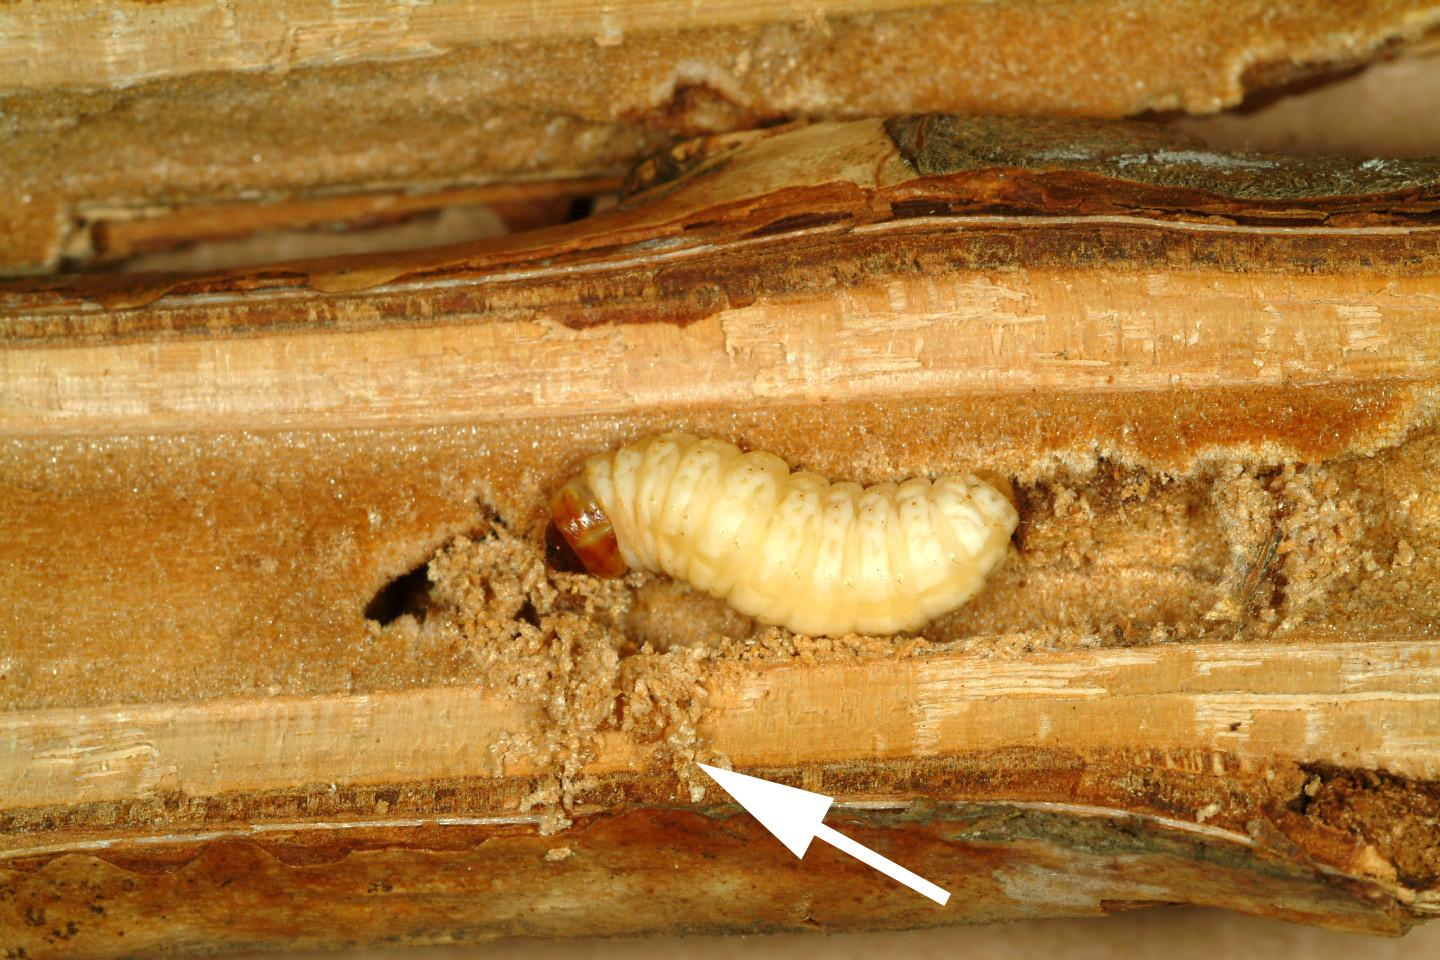 Larva boring into a cane. 